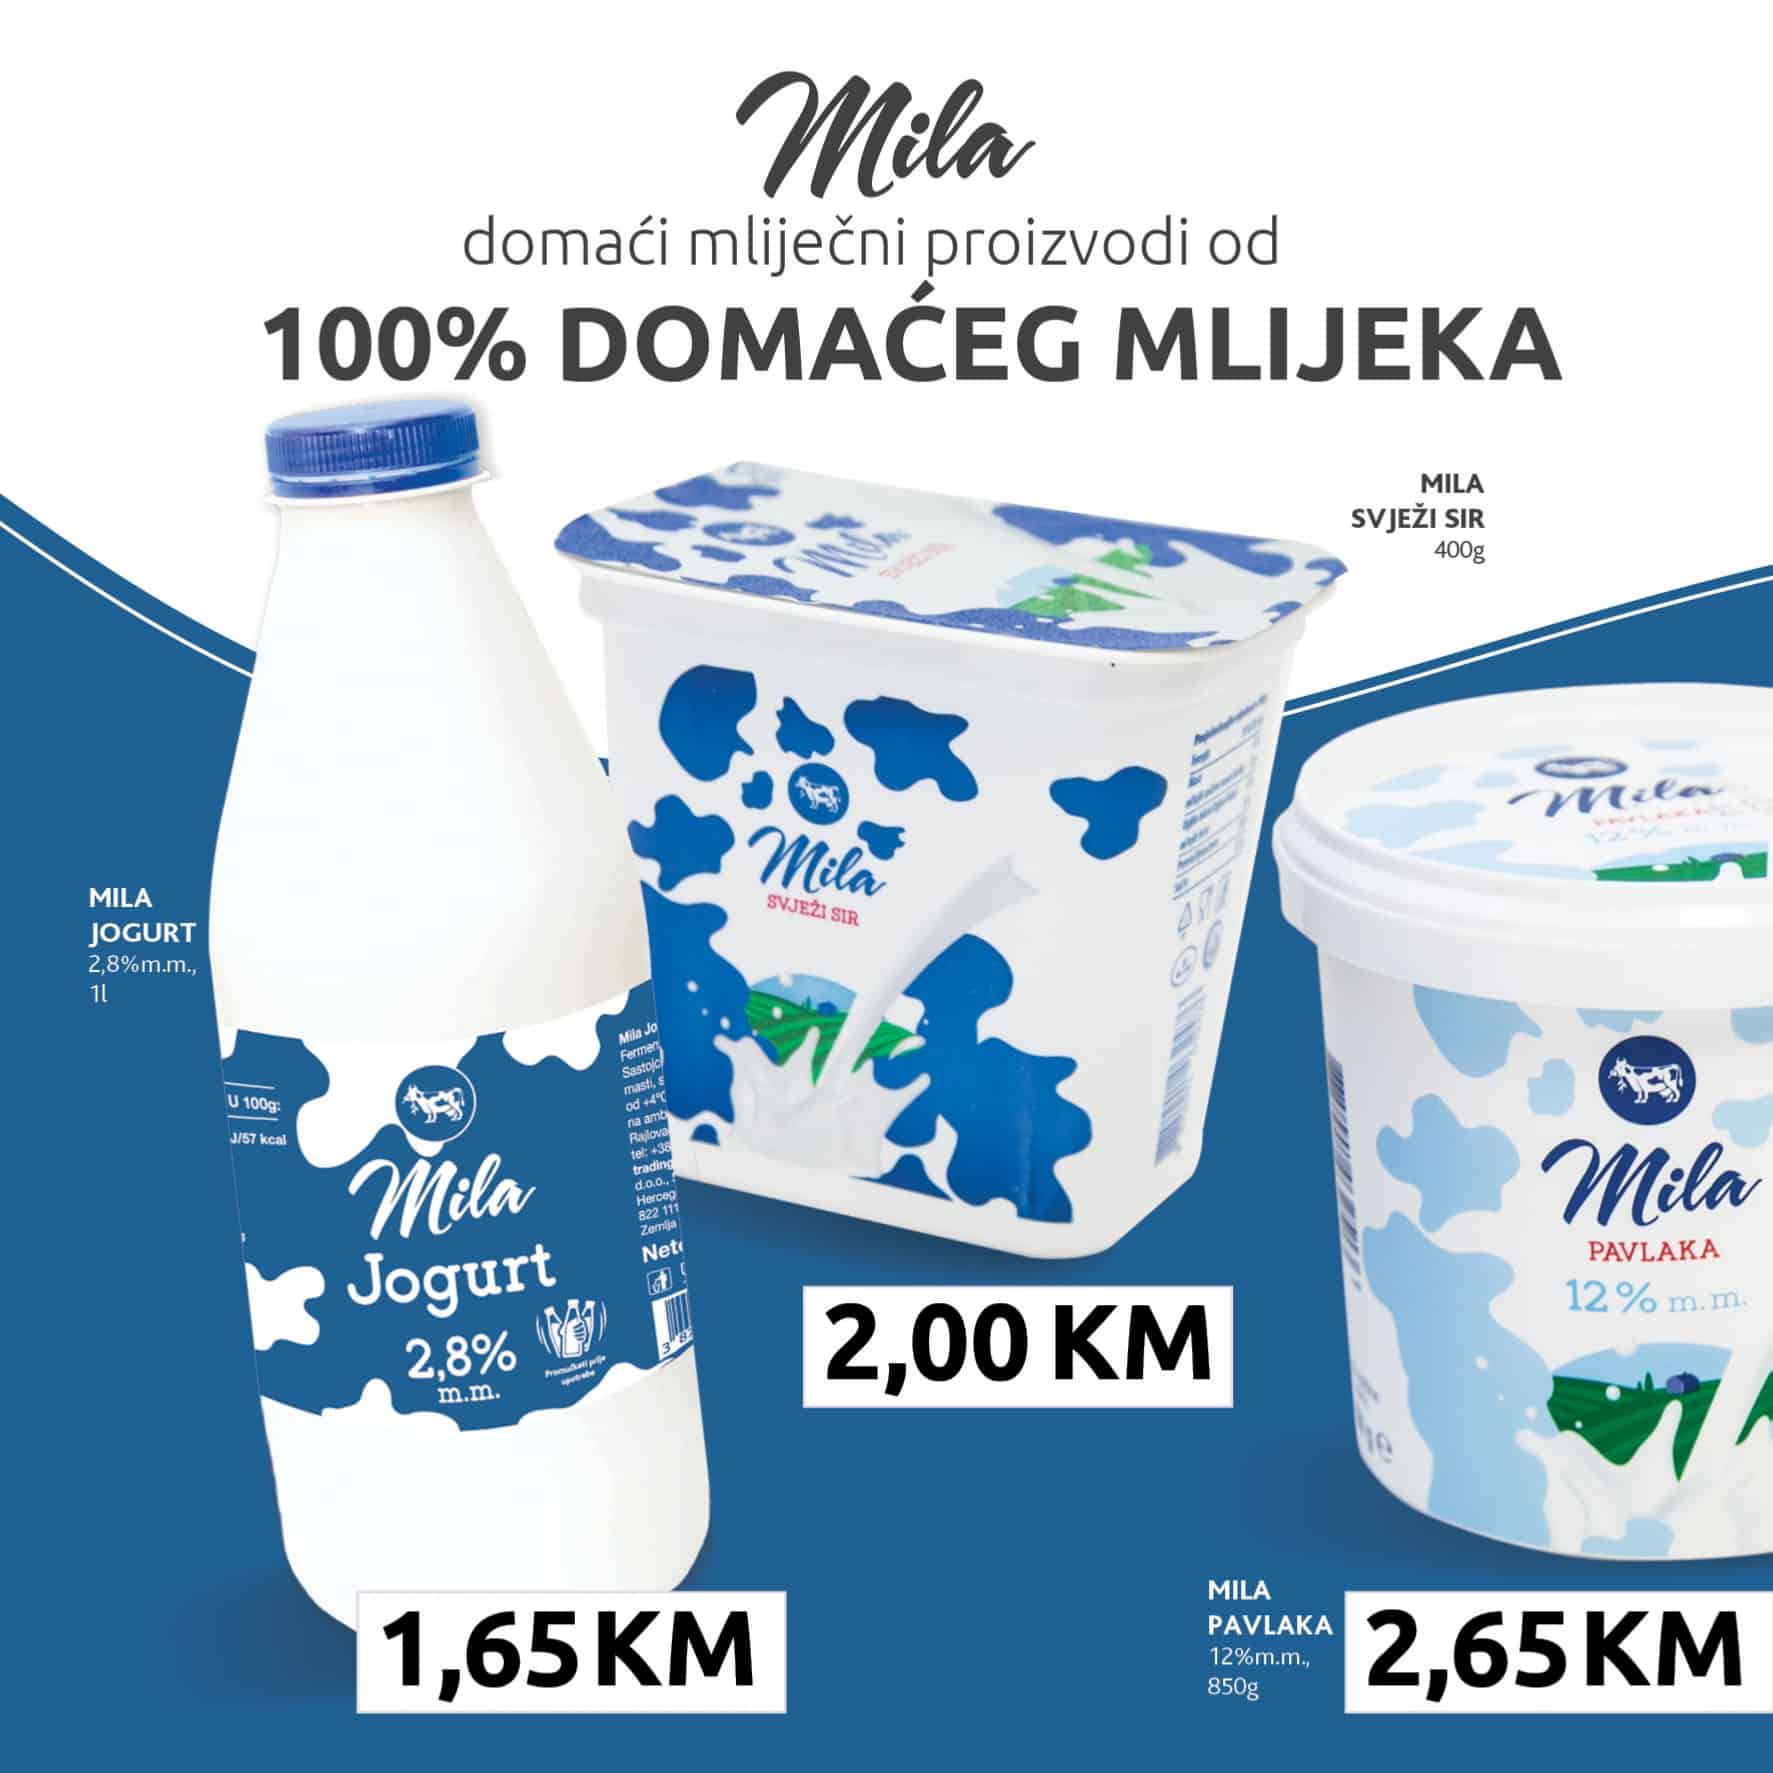 100% domaće mlijeko MIla Konzum katalog! 